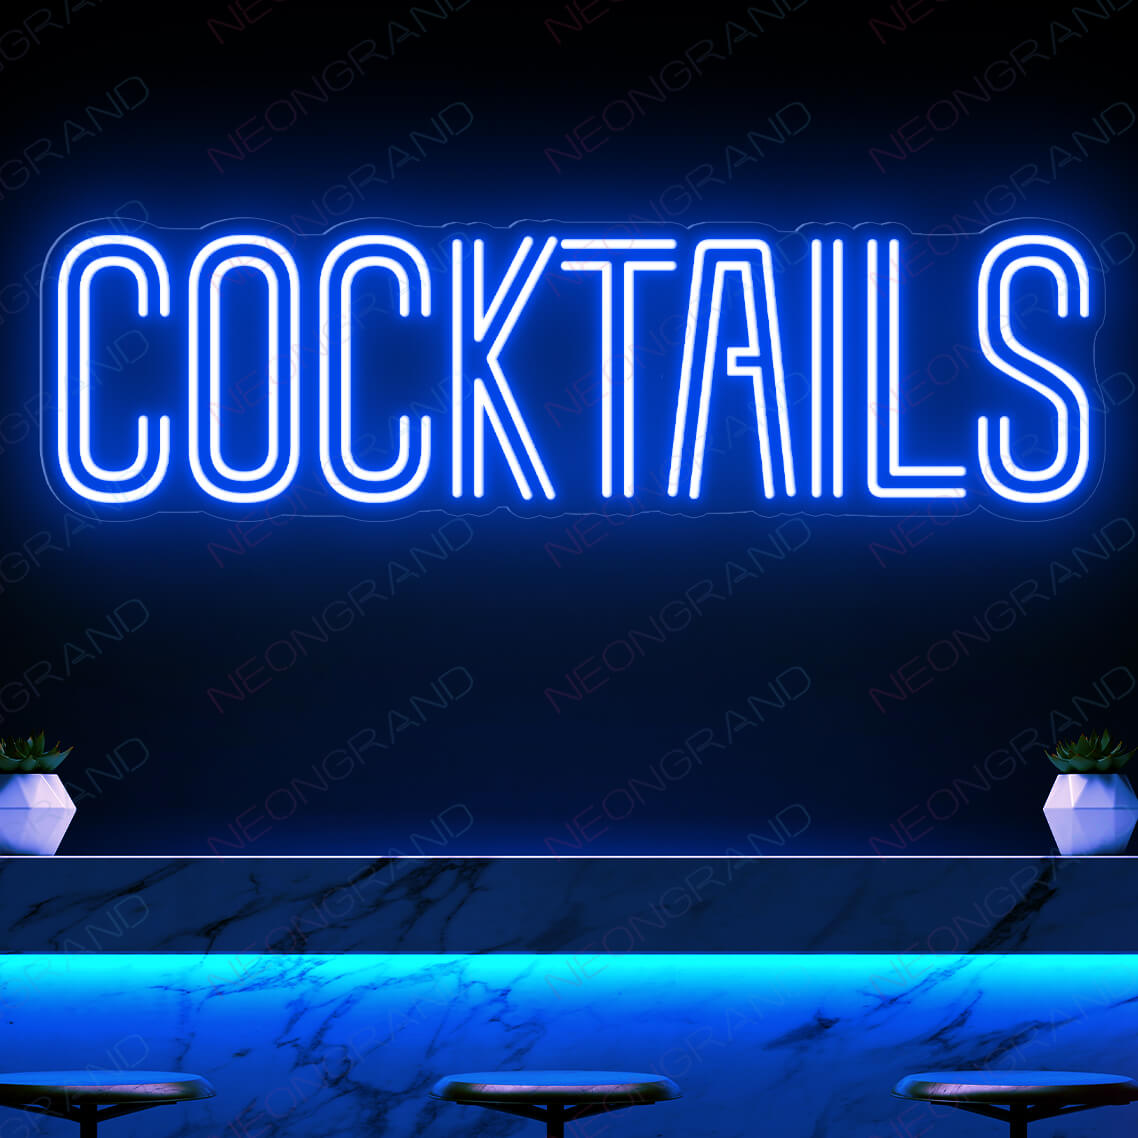 Cocktails Neon Sign Bar Led Light blue